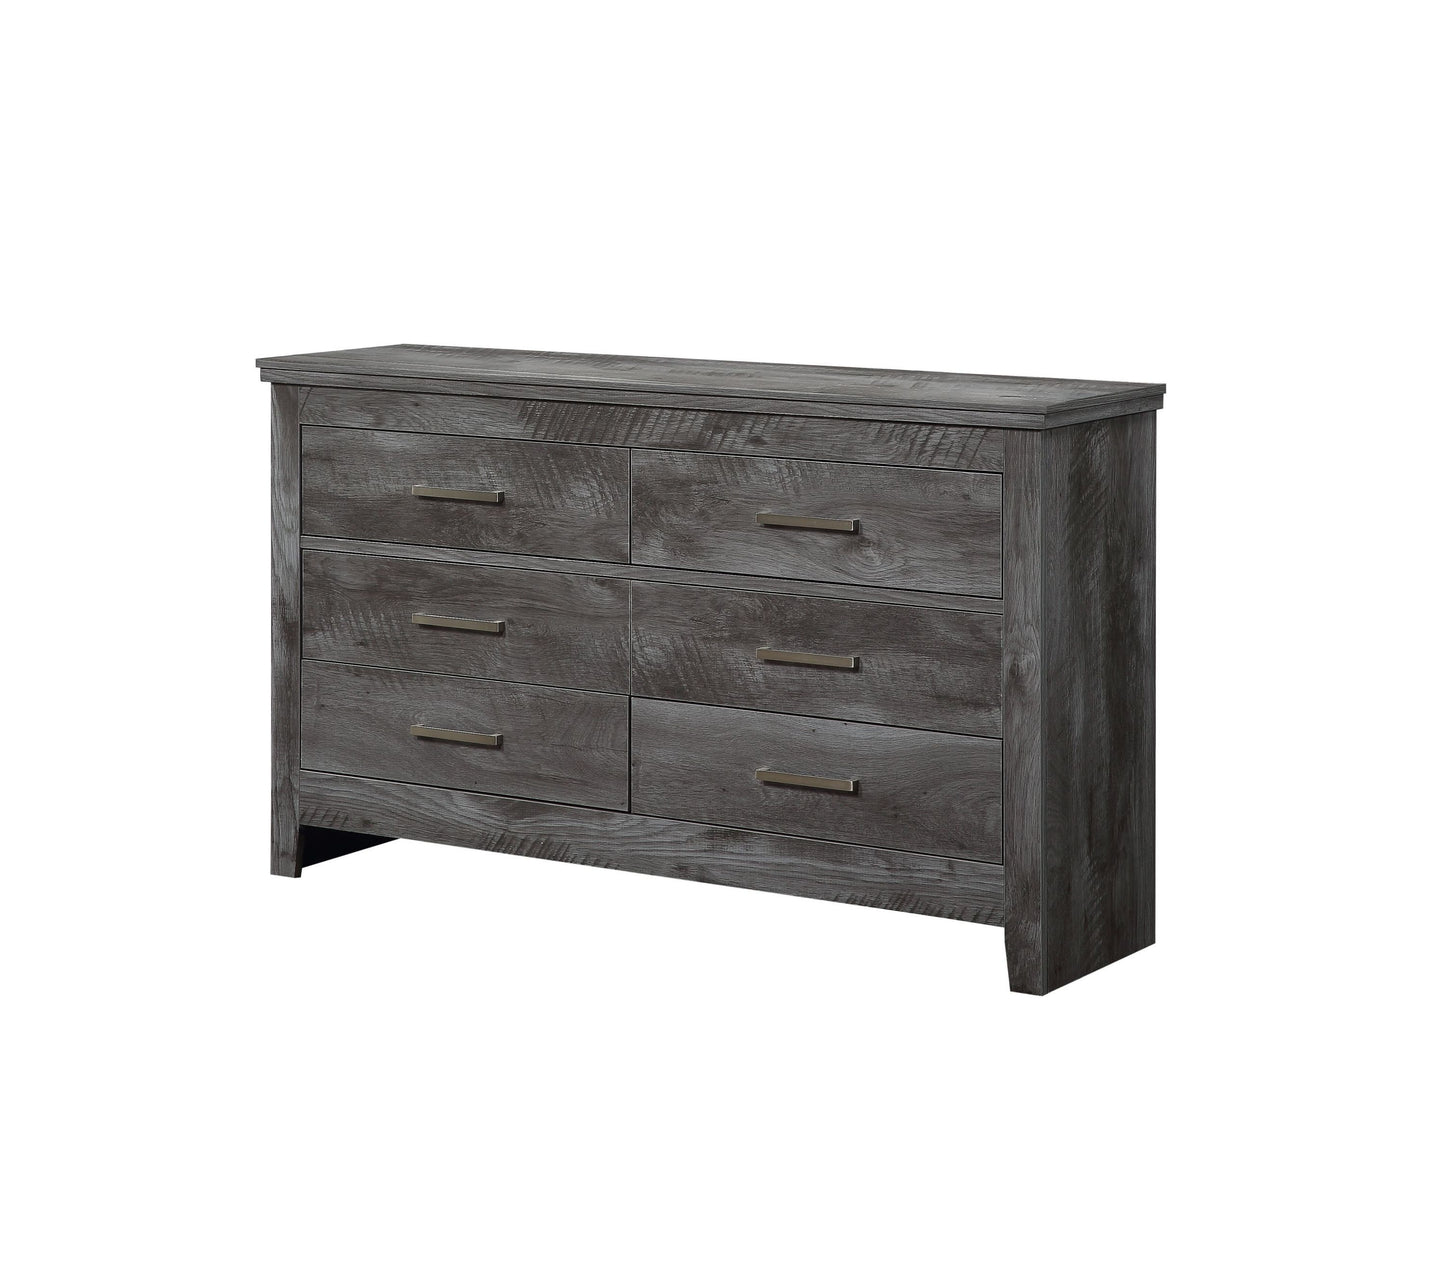 ACME Vidalia Dresser, Rustic Gray Oak